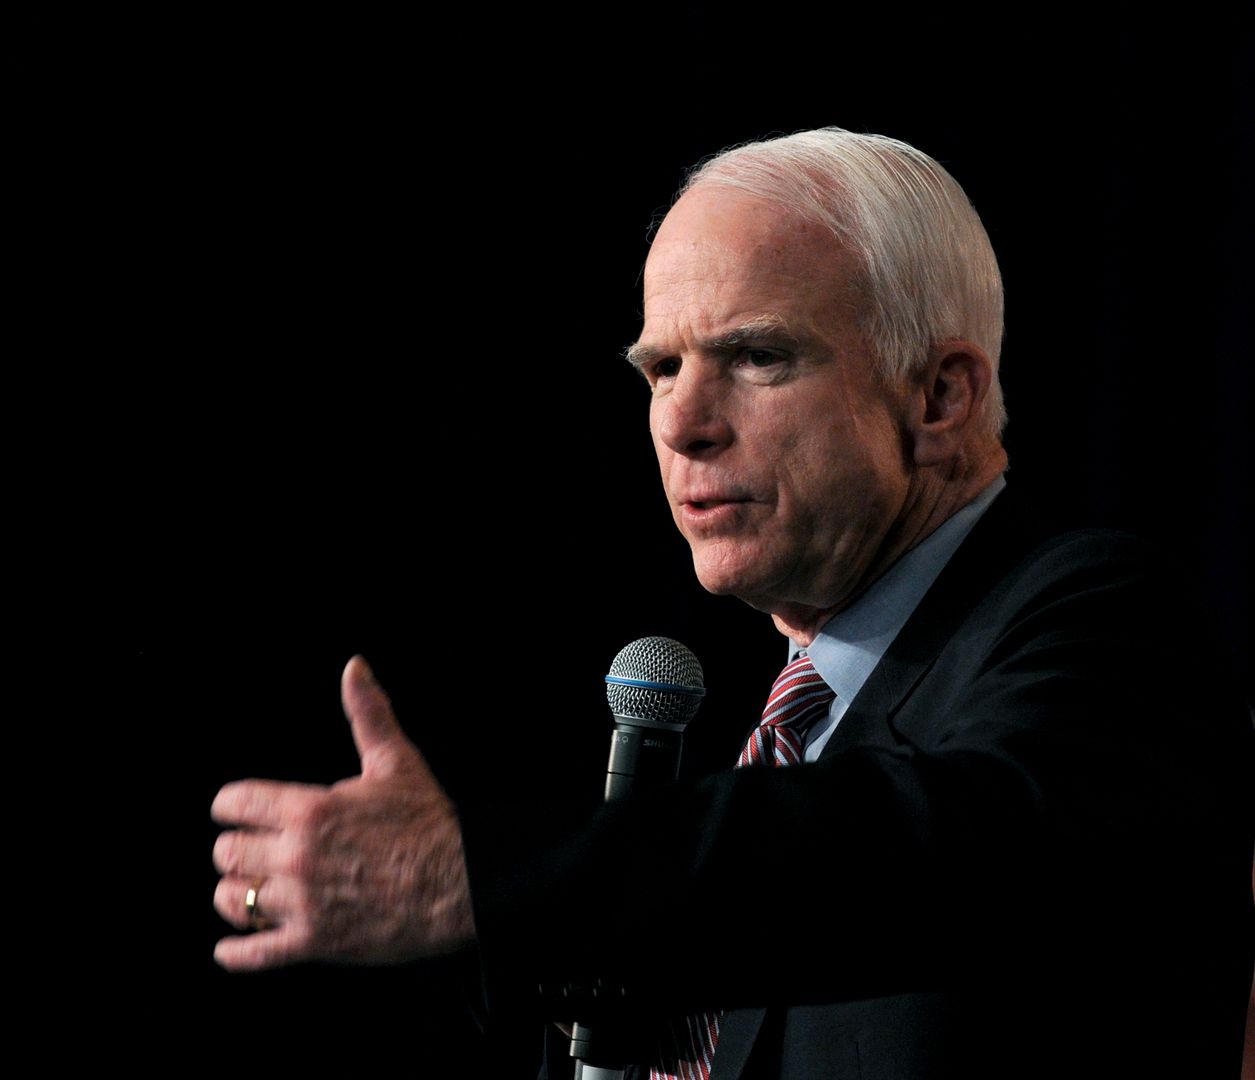 John McCain "żył życiem w służbie dla swojego kraju" - podkreśliła Hillary Clinton